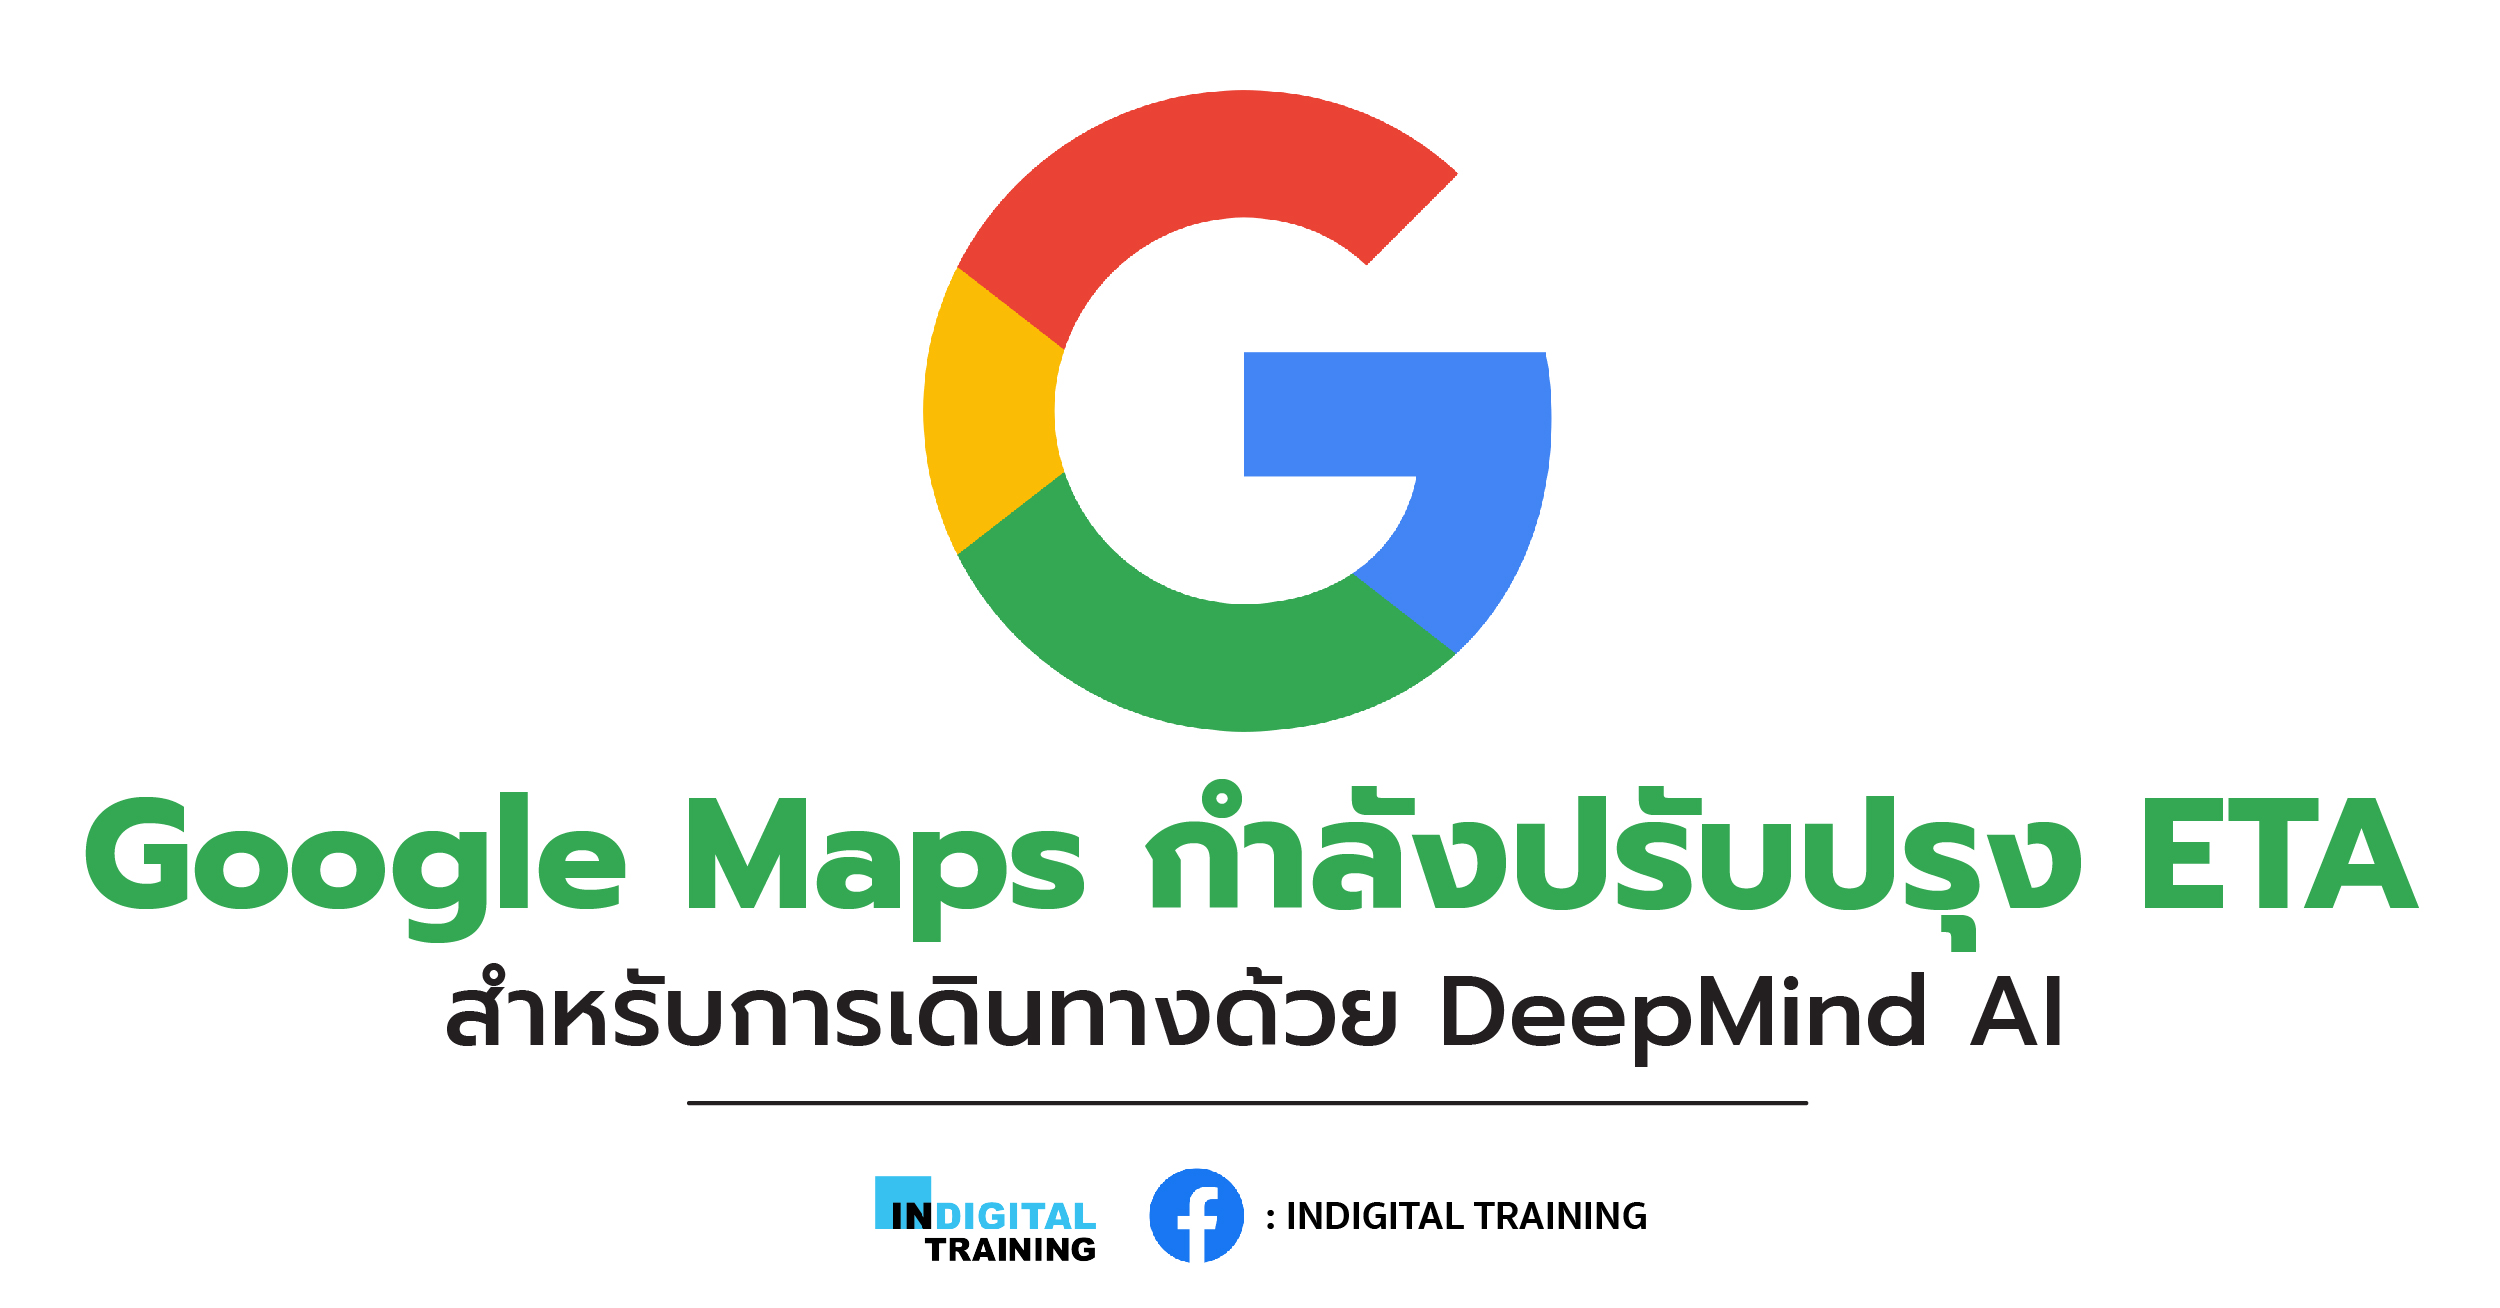 Google Maps กำลังปรับปรุง ETA สำหรับการเดินทางด้วย DeepMind AI